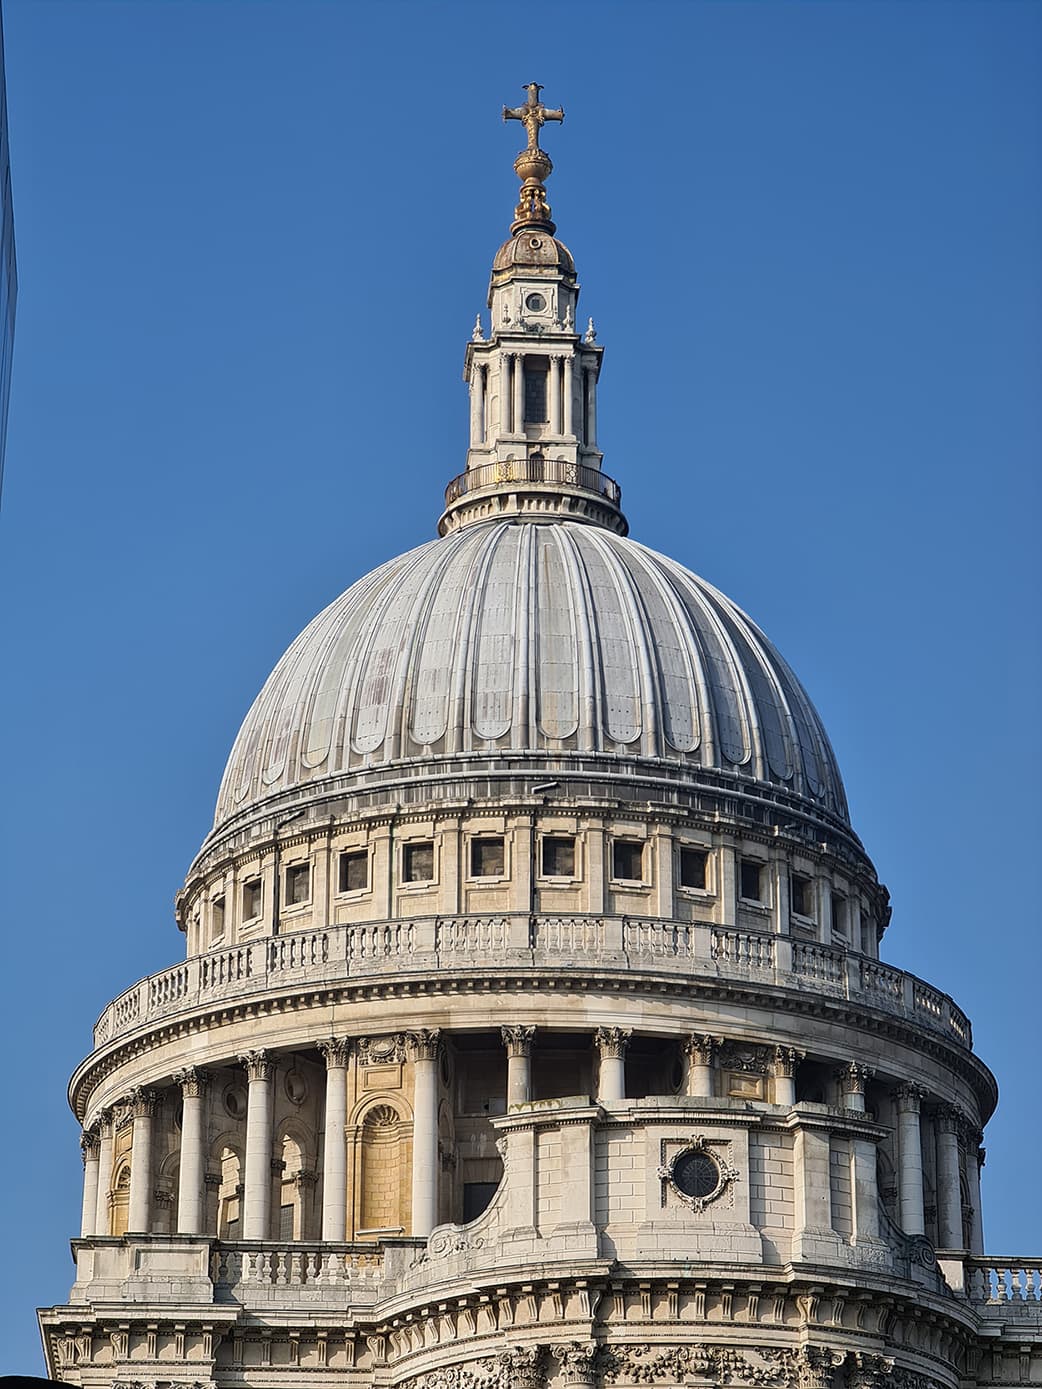 In foto si vede la cupola della cattedrale di St. Paul immersa in un bellissimo cielo azzurro.